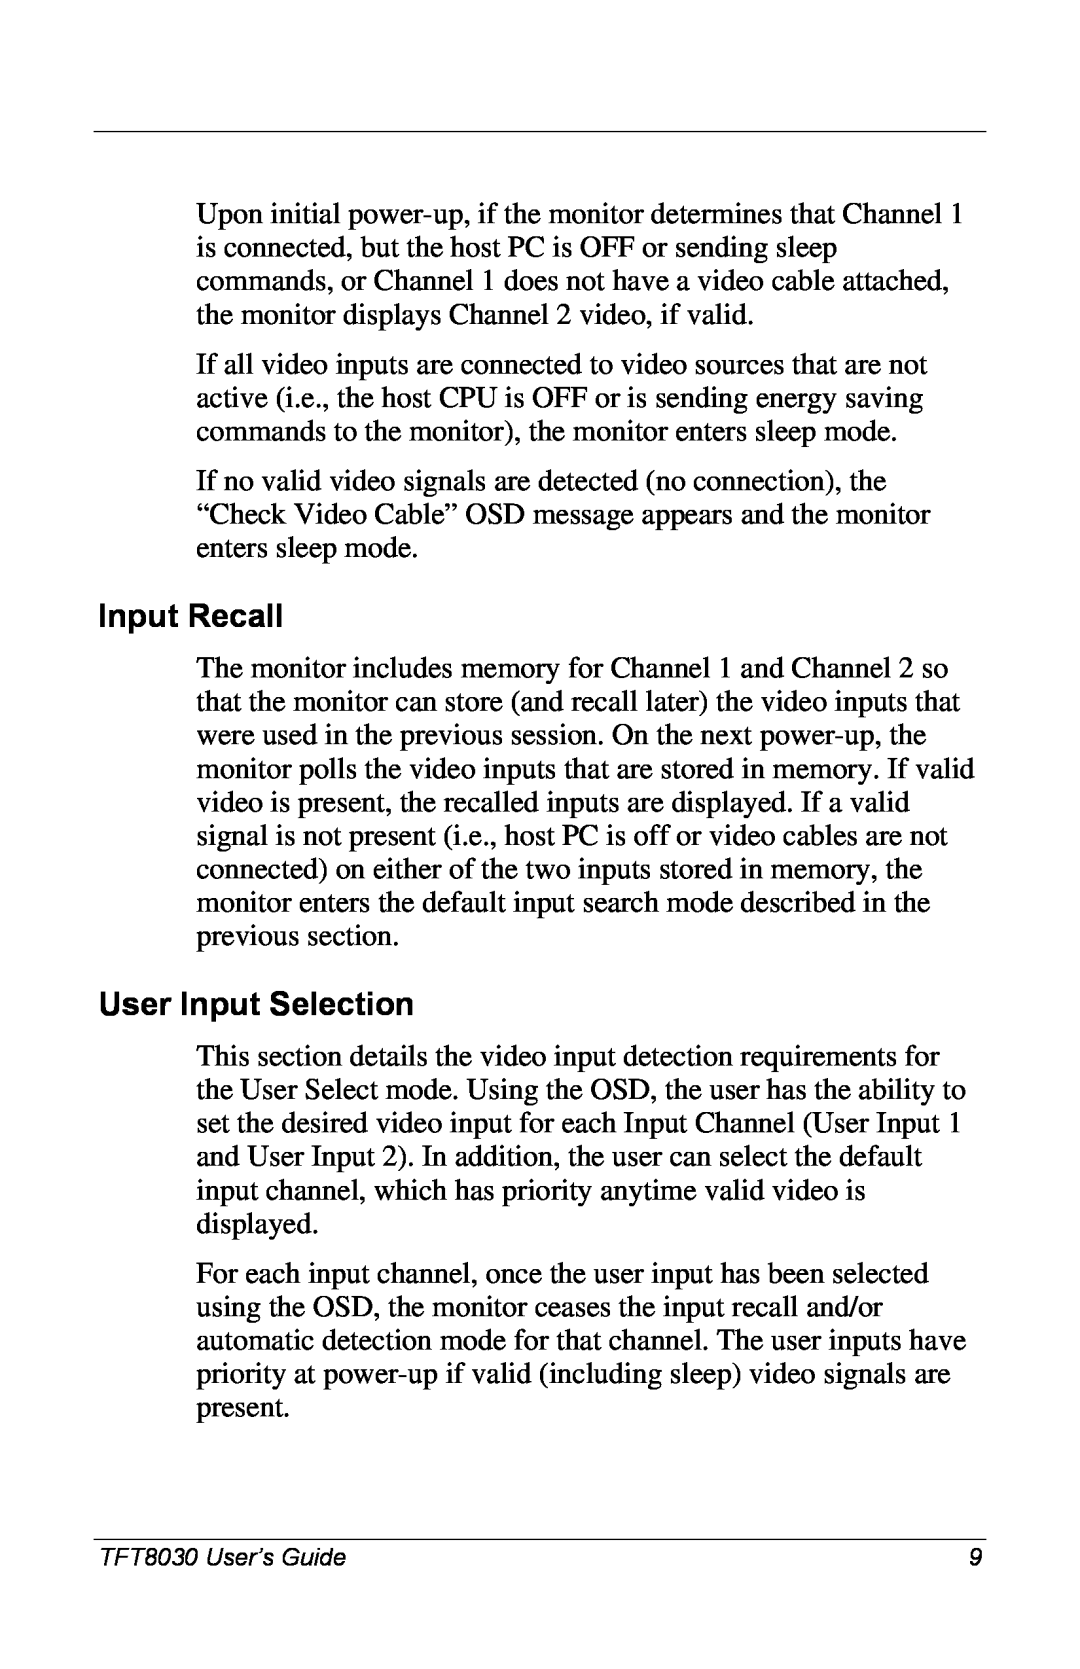 Compaq 8030 manual Input Recall, User Input Selection 